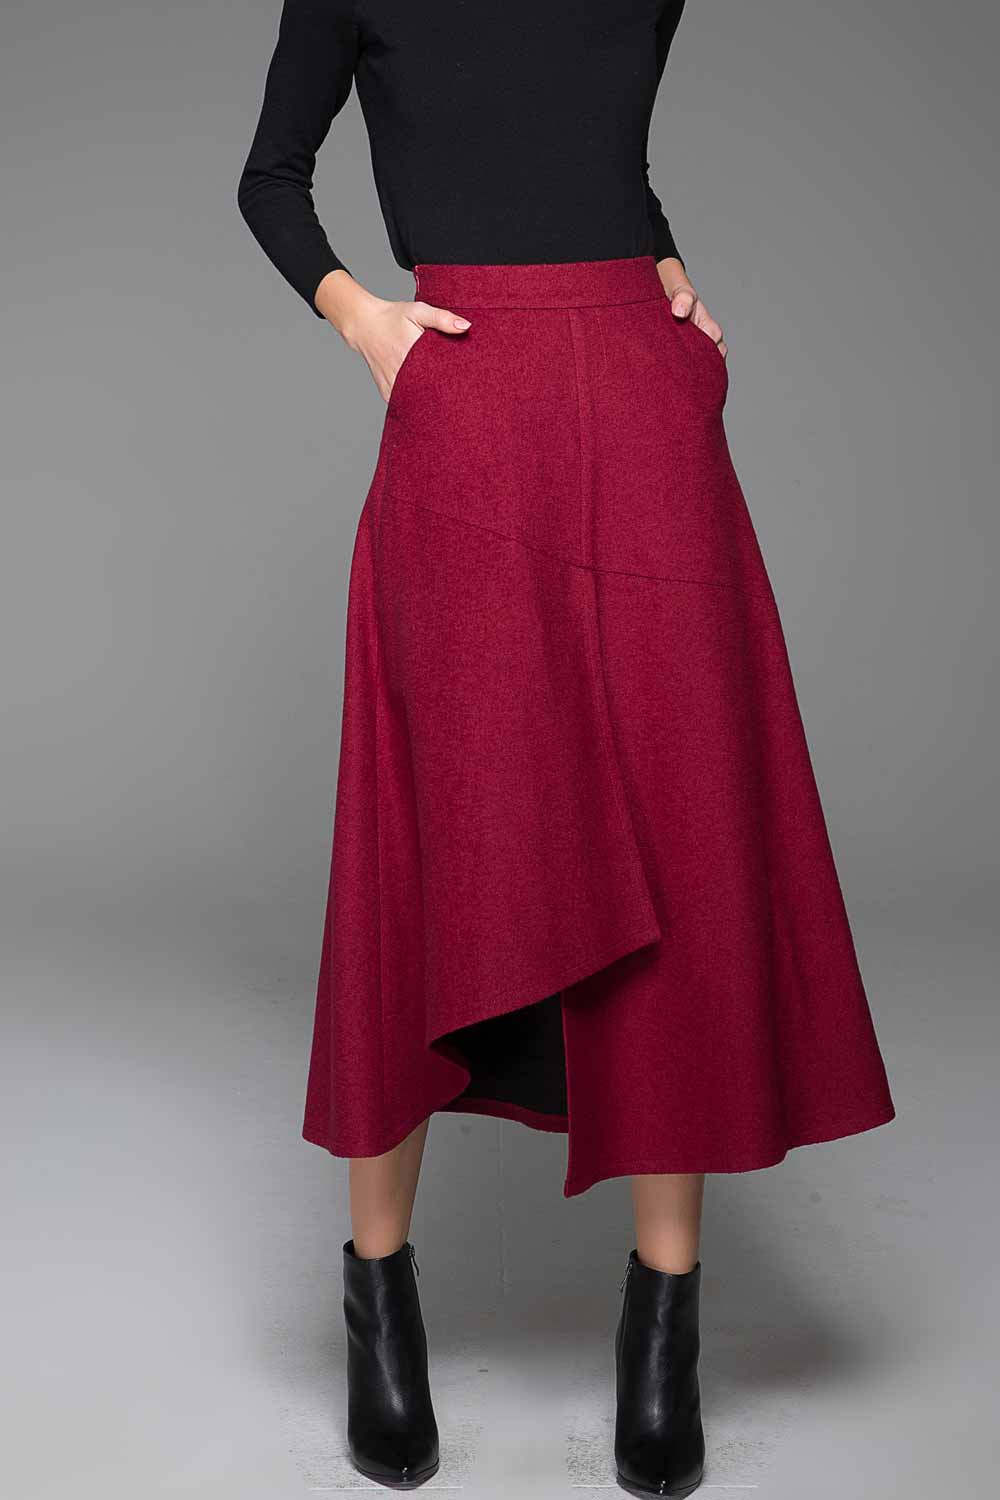 Dark gray wool skirt - womens wool skirt 1380#